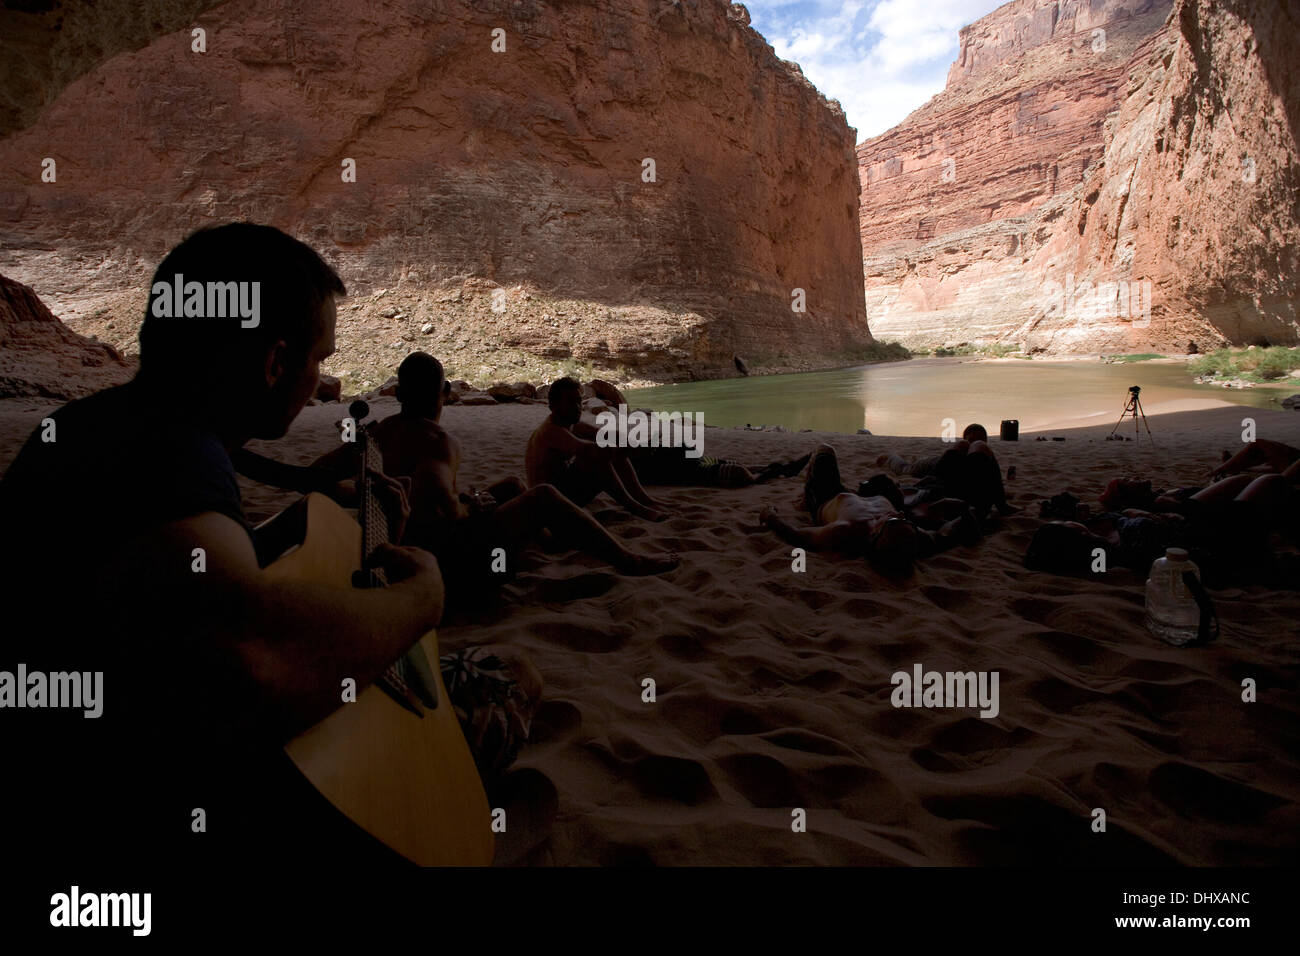 Un gruppo di balseros rilassa e suona la chitarra all'interno della caverna Redwall nel Grand Canyon, Arizona, Stati Uniti d'America Foto Stock